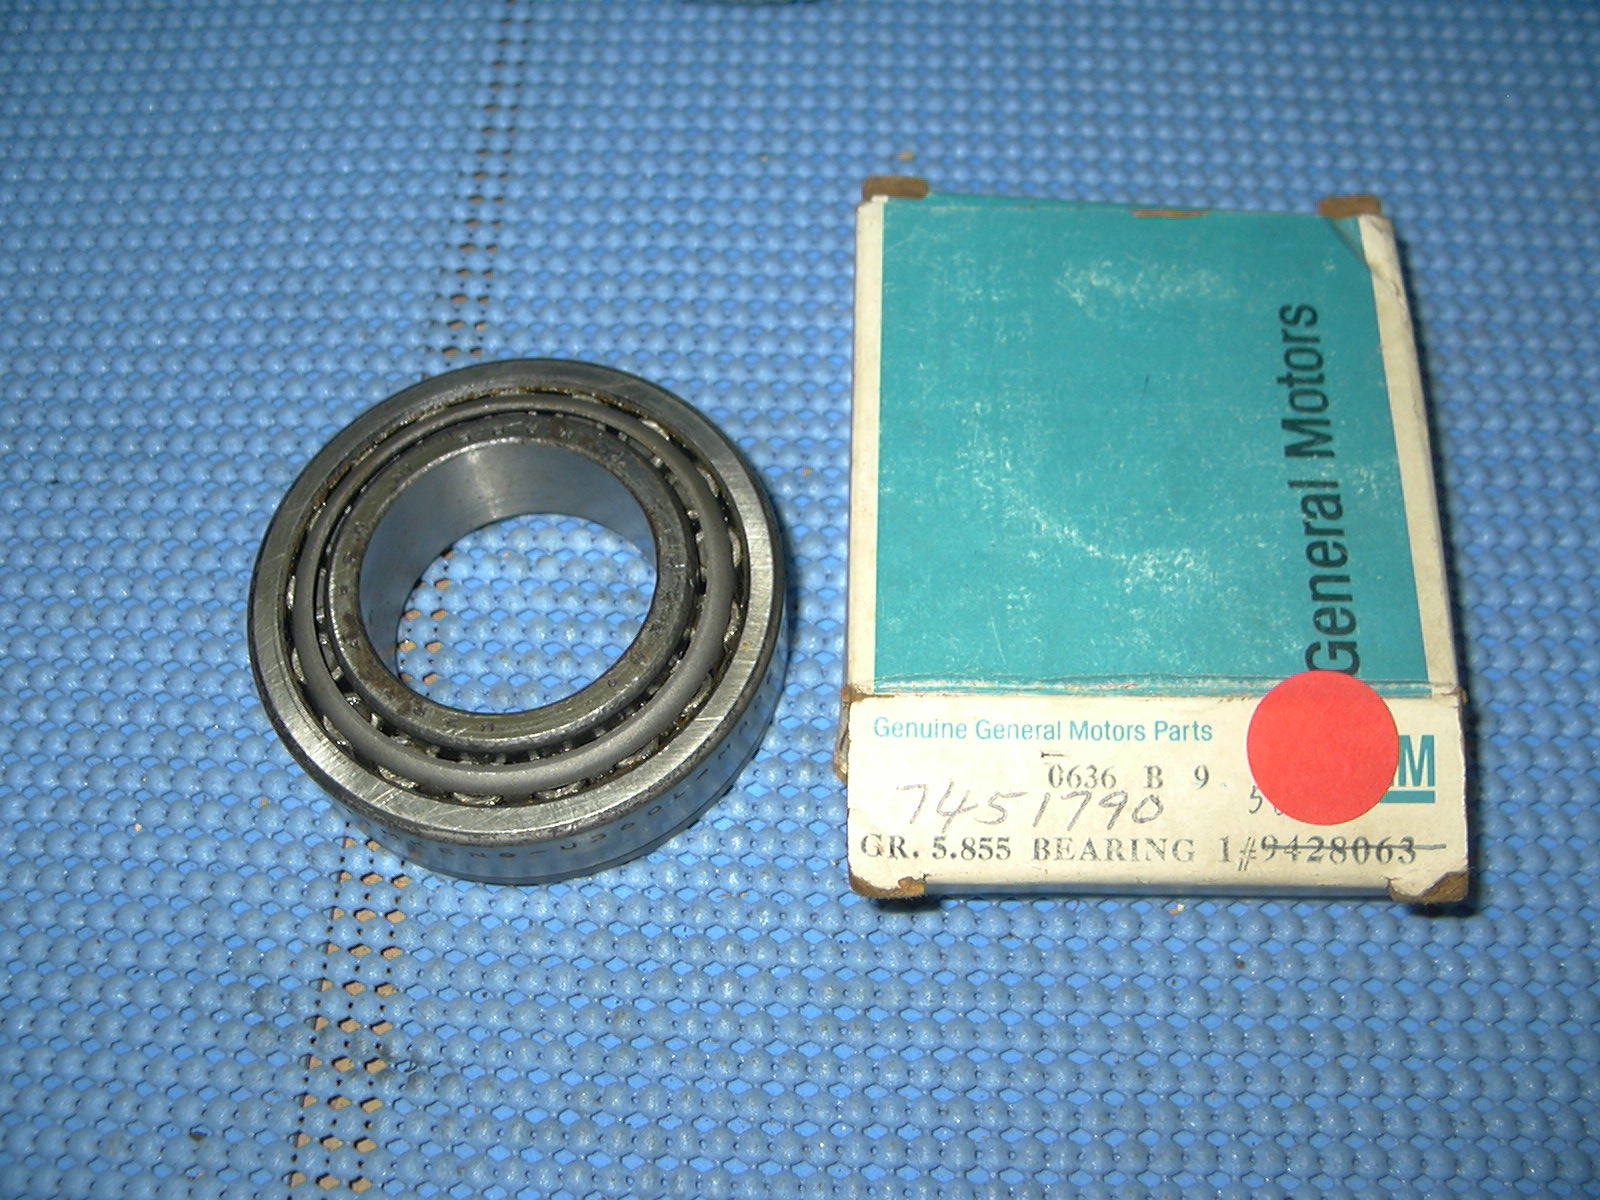 1969-1976 GM Rear Wheel Bearing NOS # 9428063